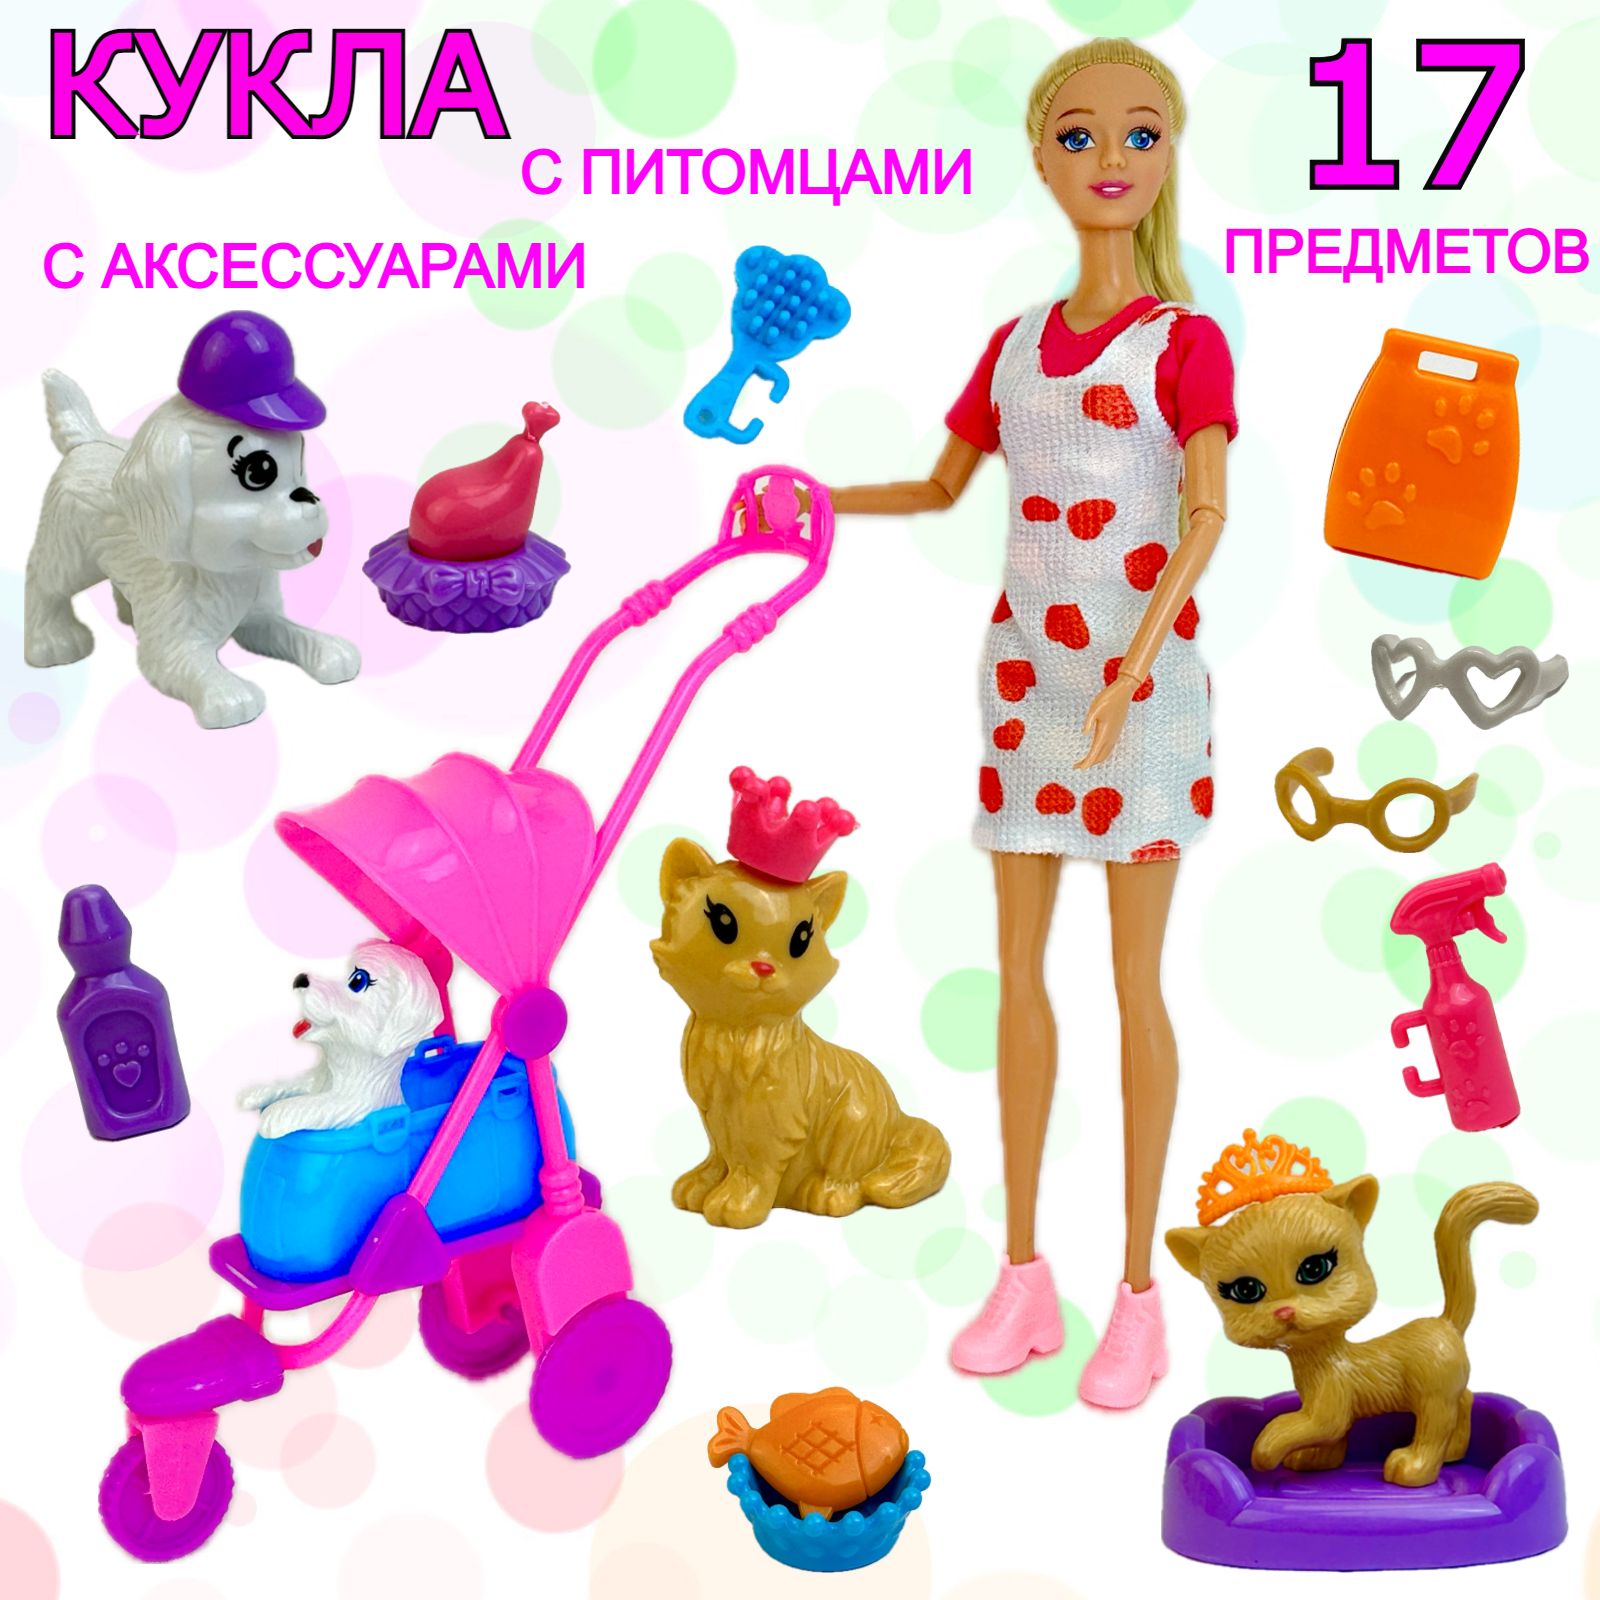 Кукла BETTINA Sasha с питомцами и аксессуарами шарнирная 29 см 17 предметов